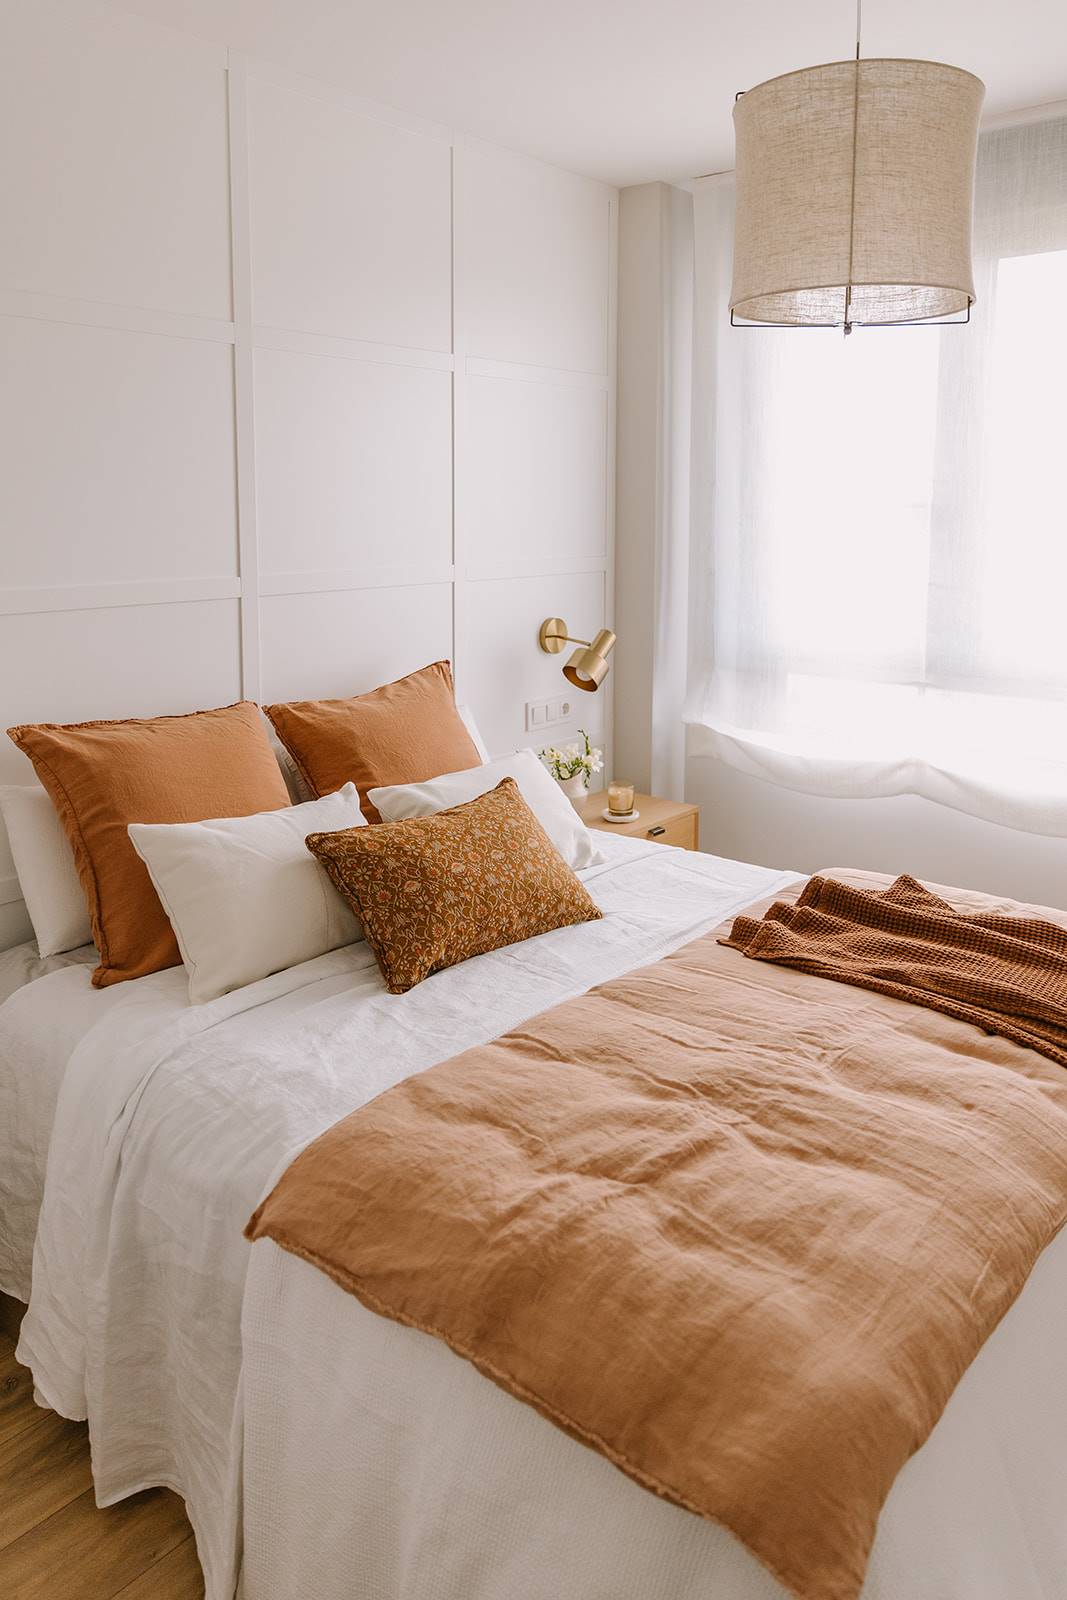 El dormitorio principal con textiles en tonos blancos y tejas.